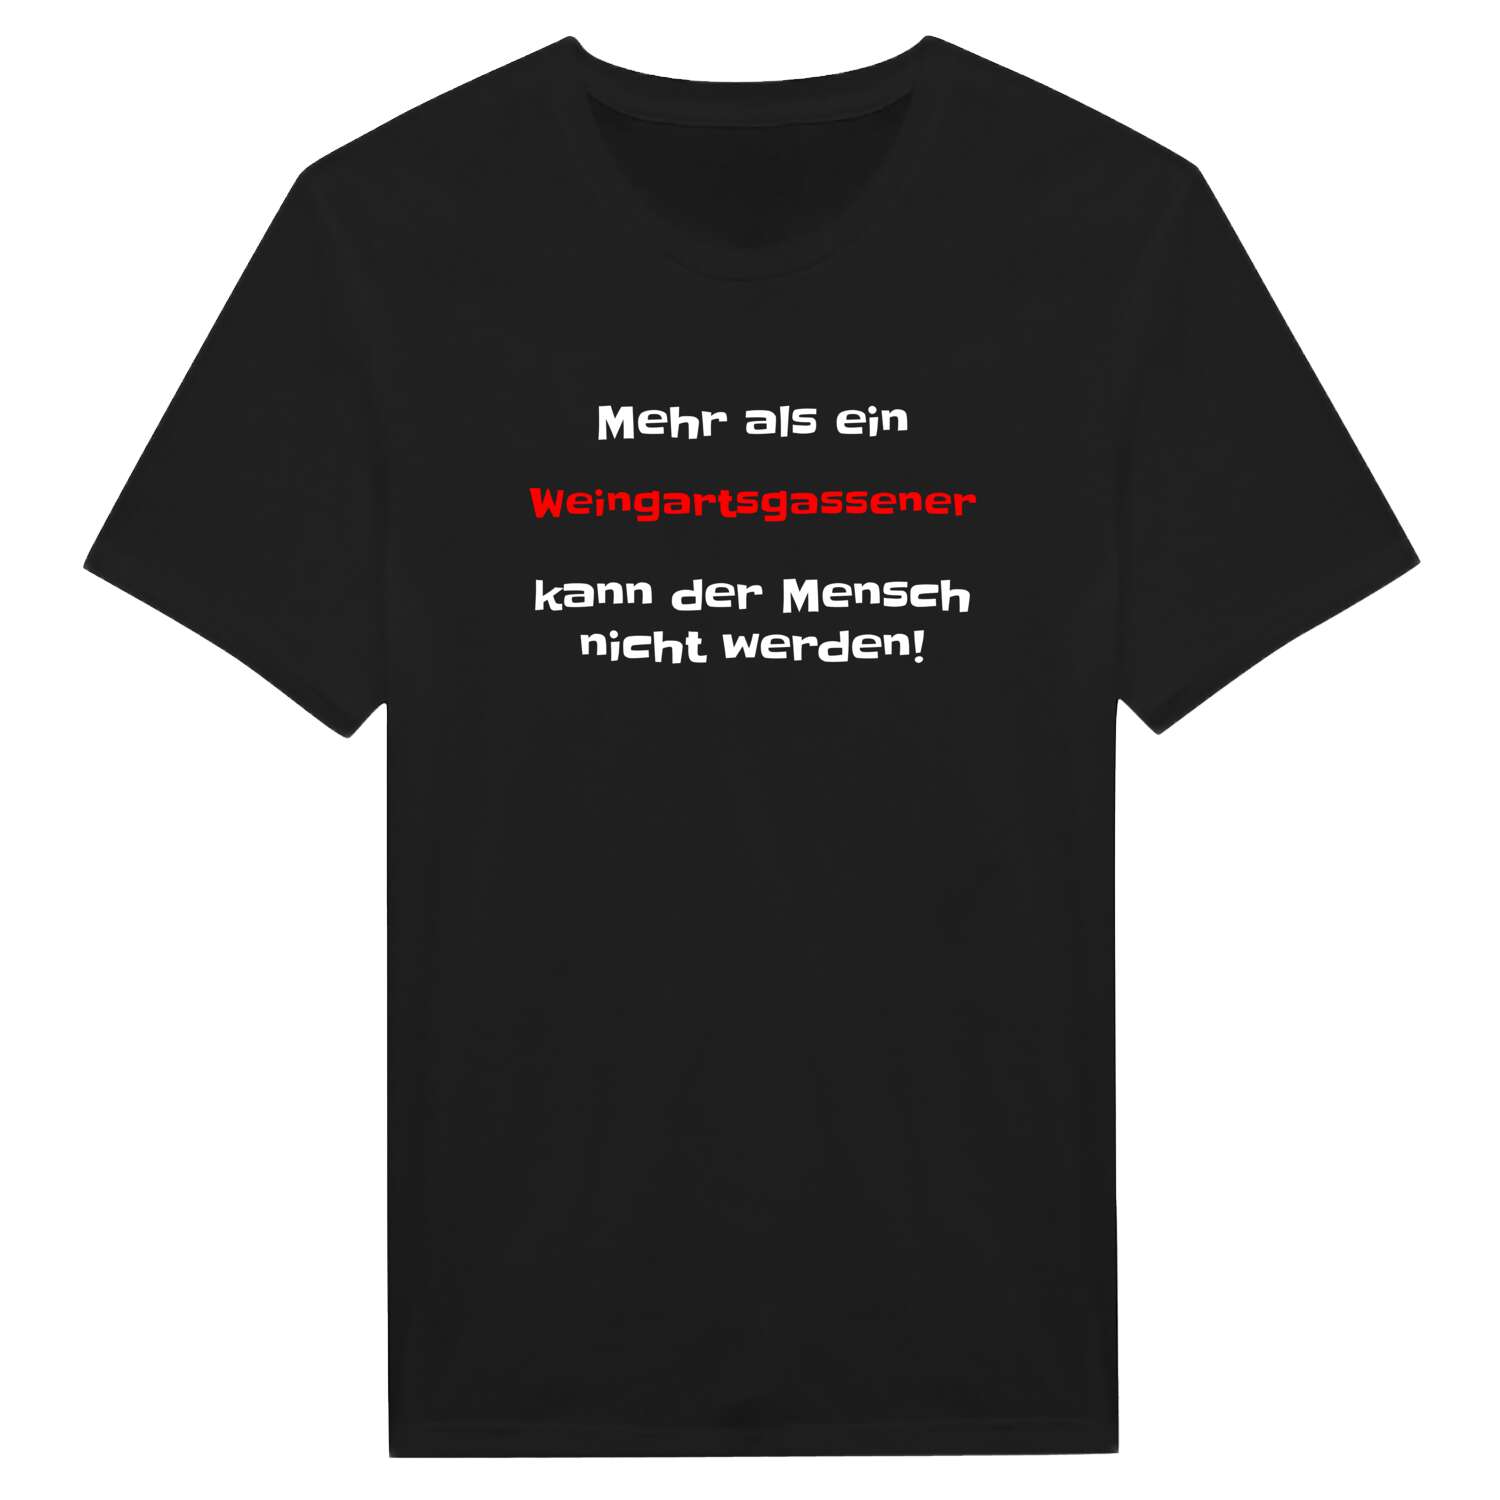 Weingartsgasse T-Shirt »Mehr als ein«